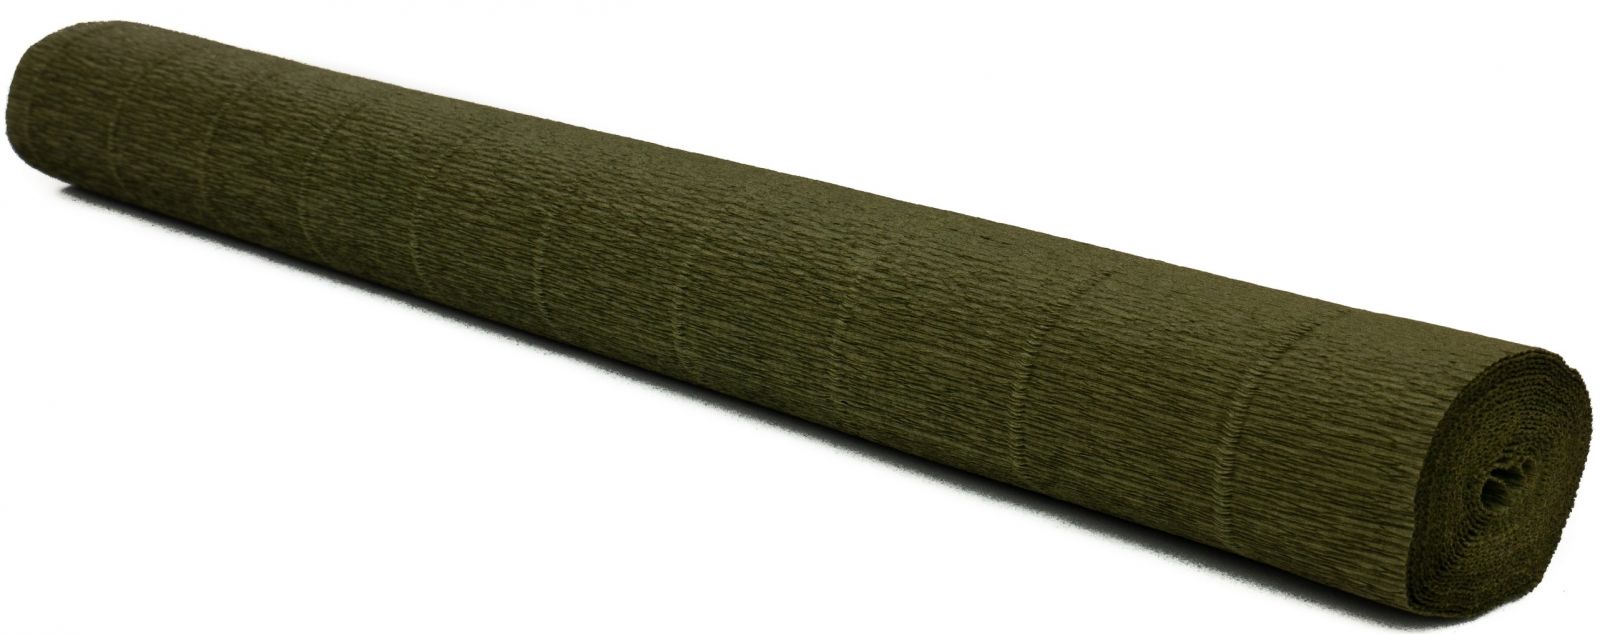 Krepový papír EXTRA pevný 180g, 50x200cm - k výrobě květů a jiné dekorace - Zelená oliva